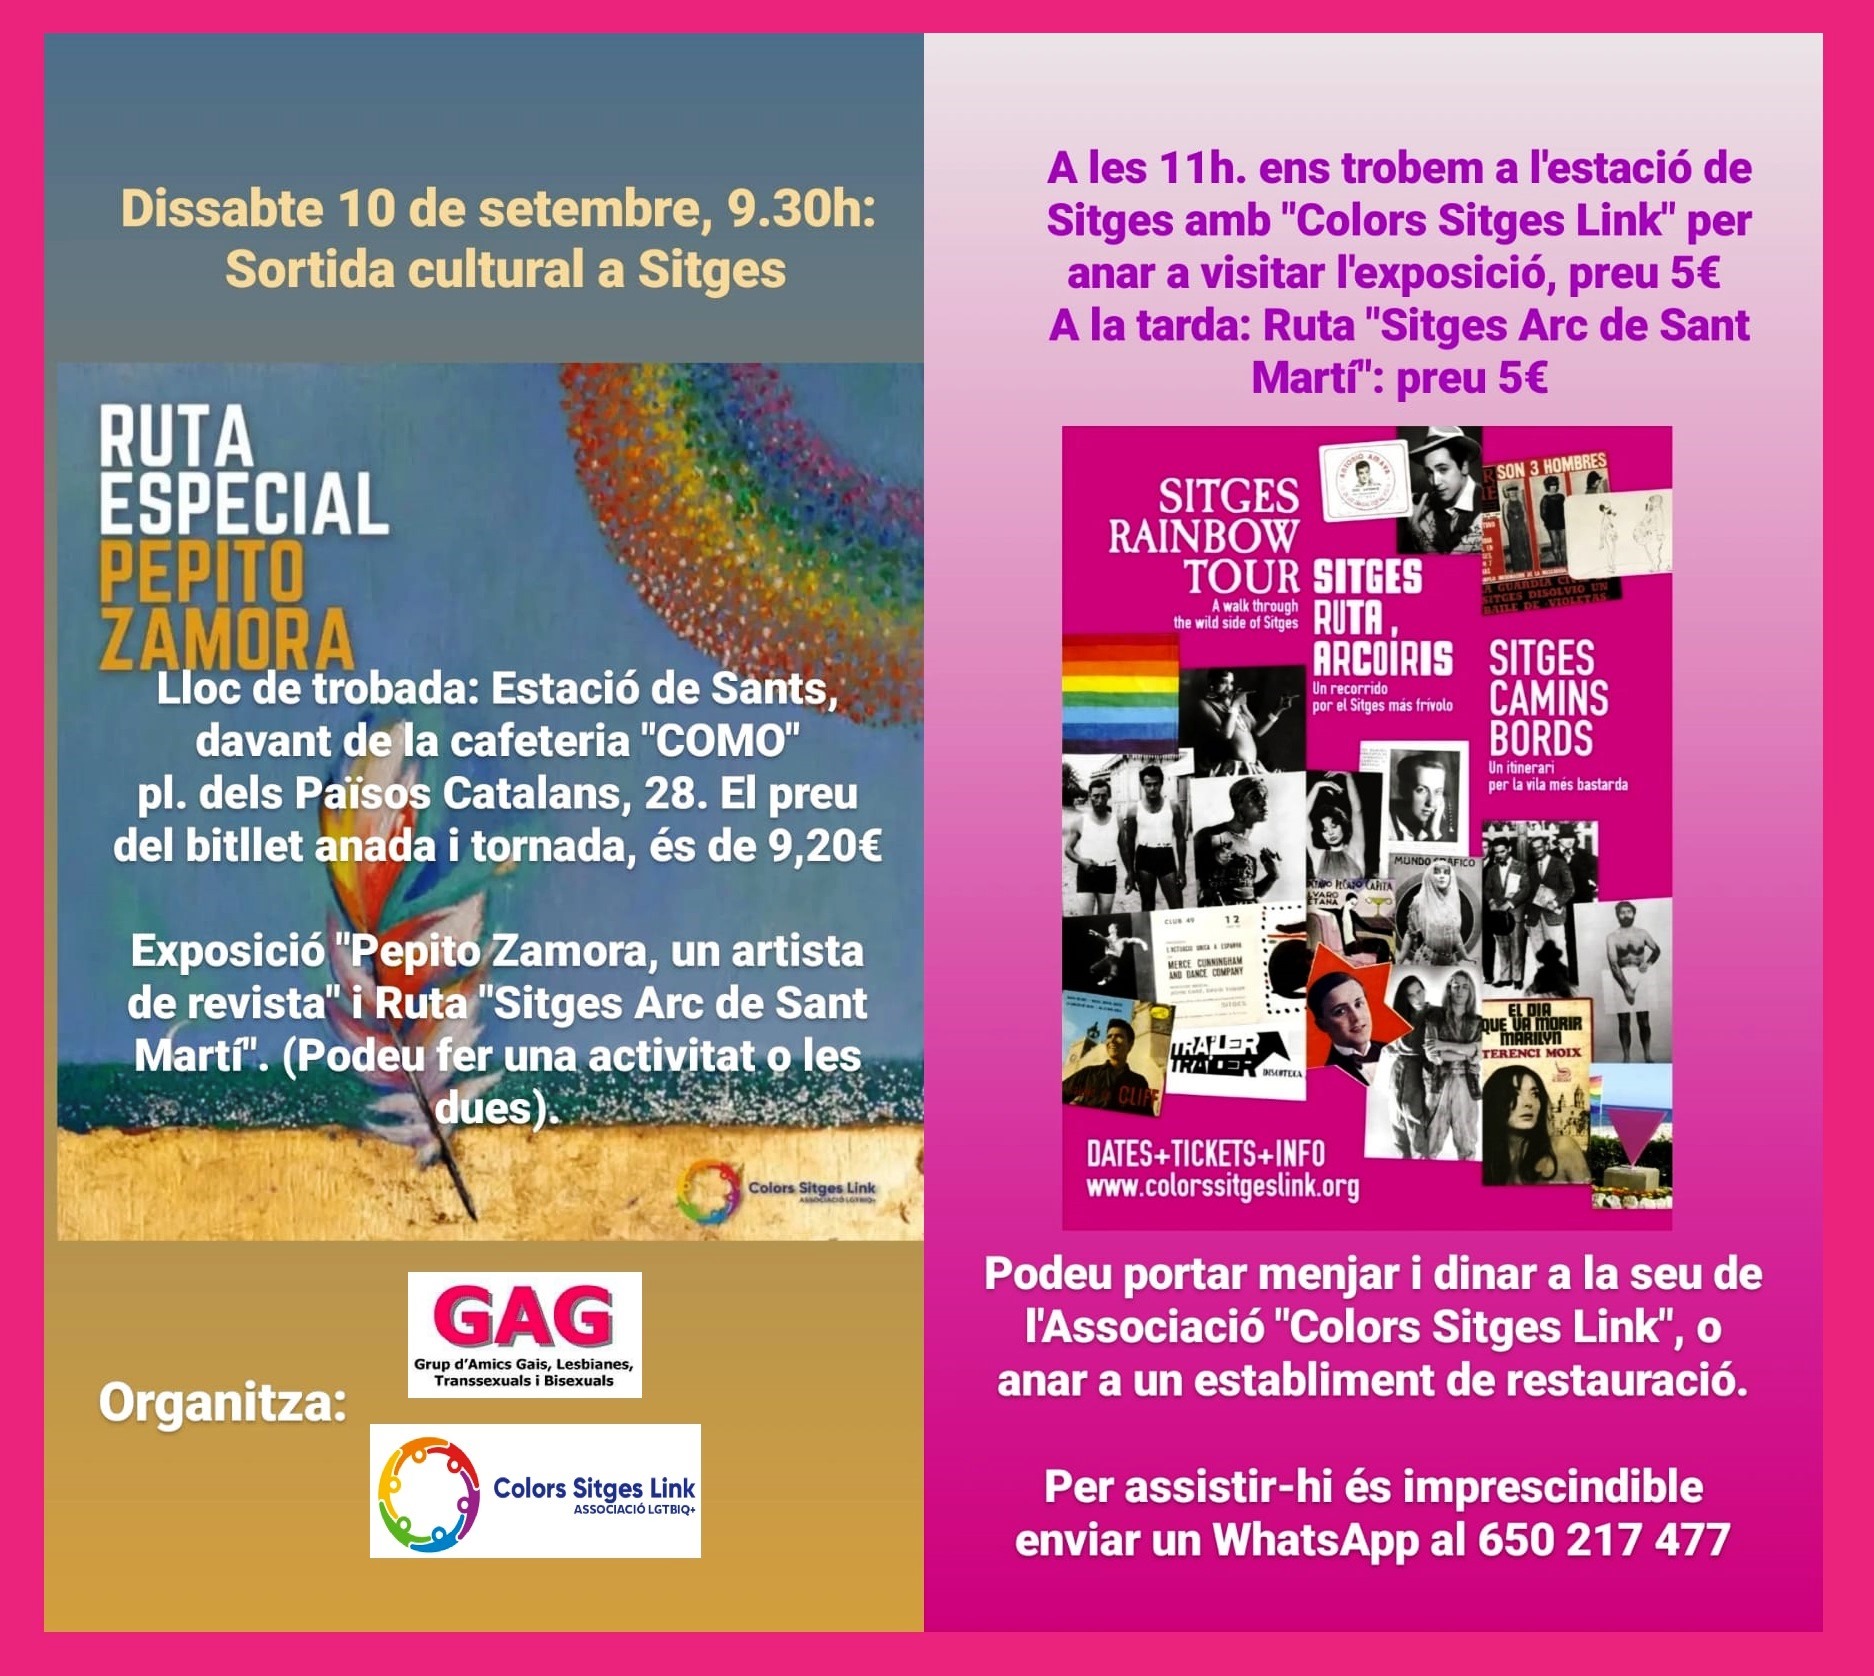 10 de setembre a les 9:30 – Sortida cultural a Sitges